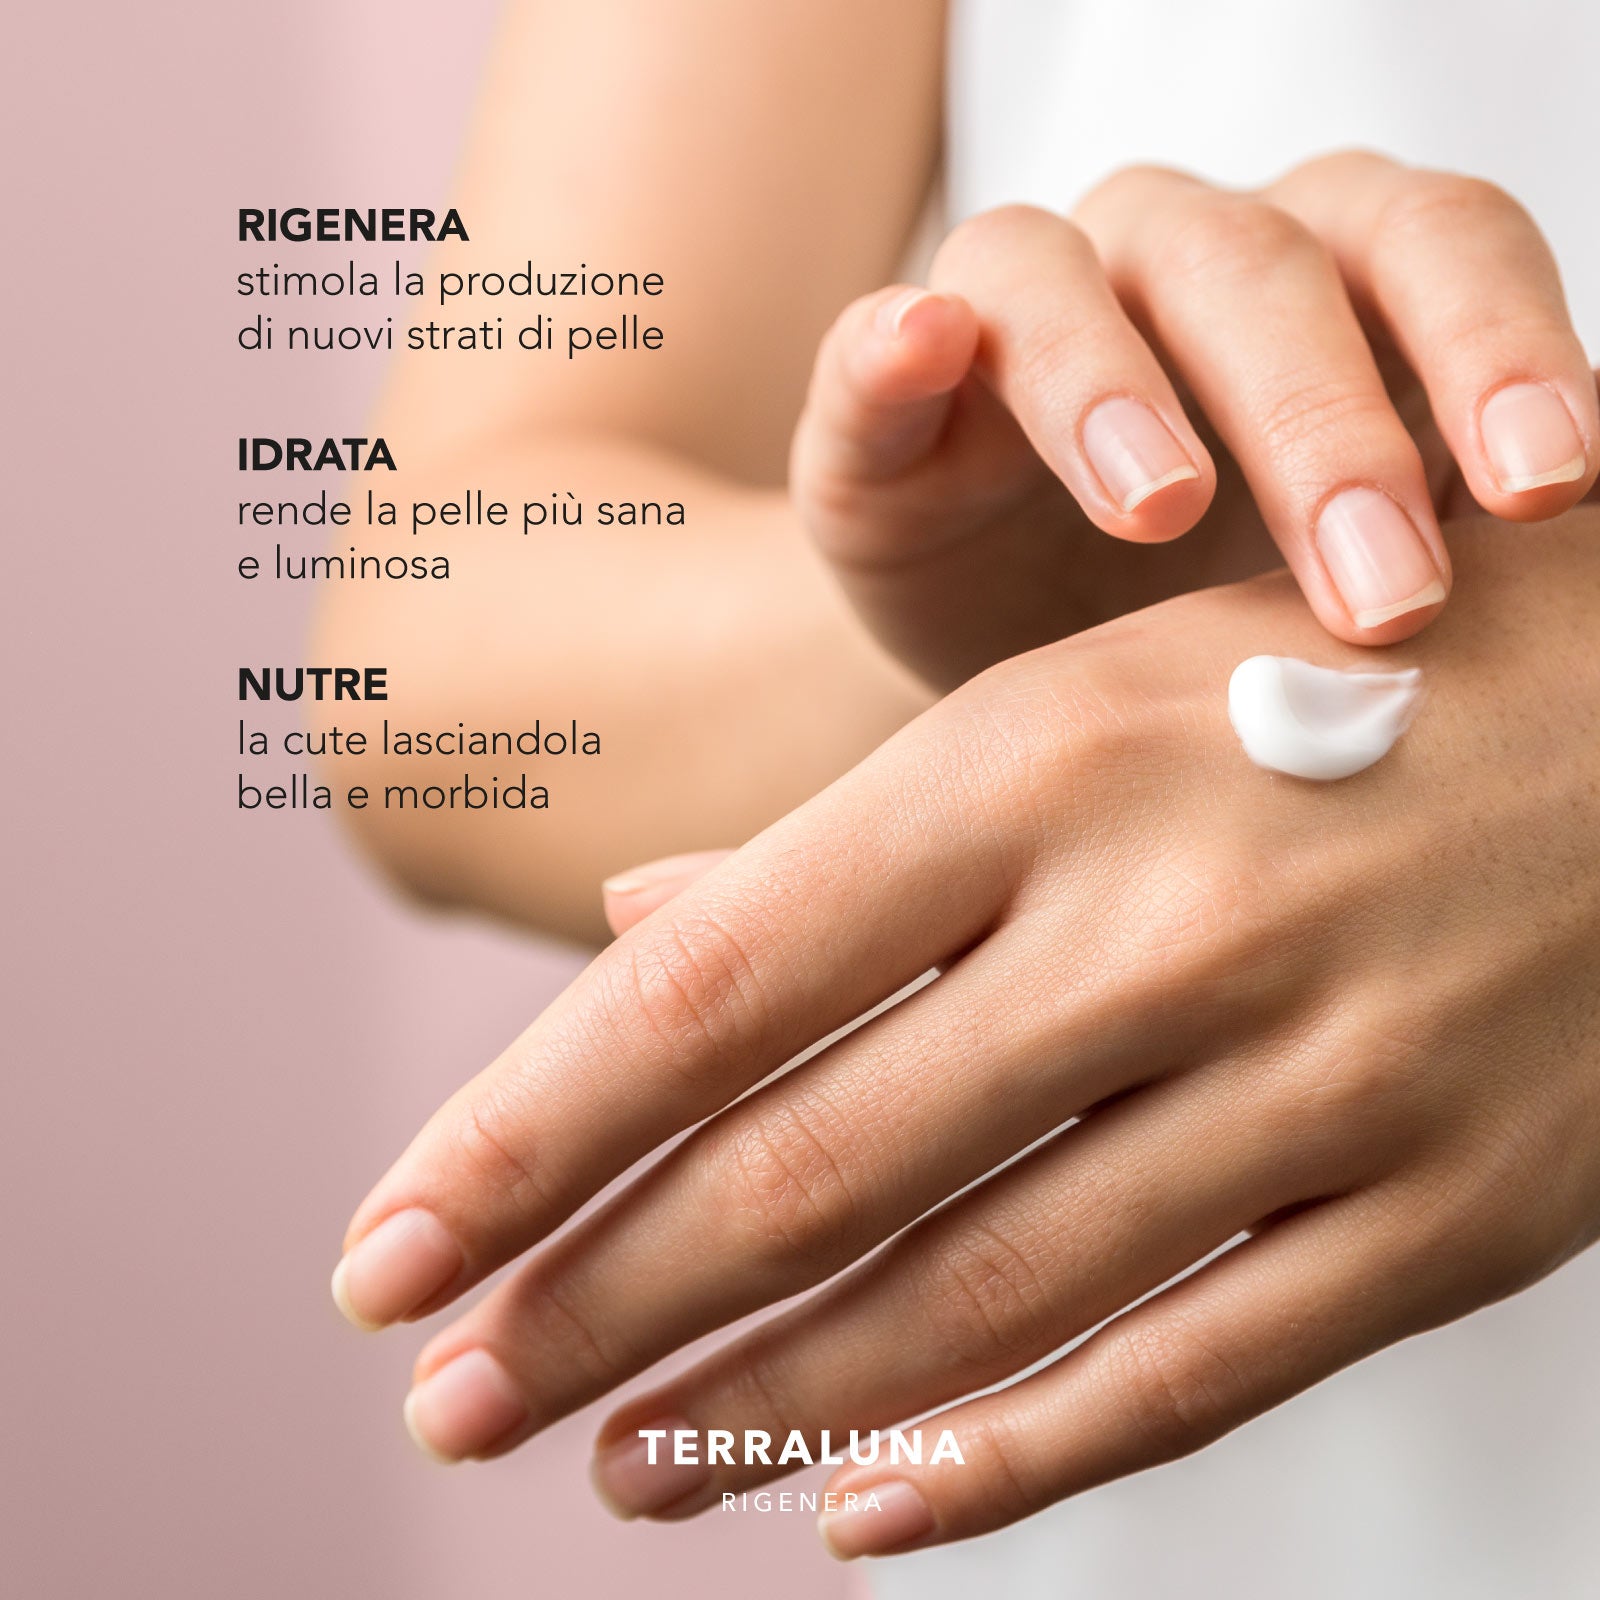 Crema su mani curate di una donna con i benefici elencati: rigenera, idrata, nutre - TERRALUNA rigenera